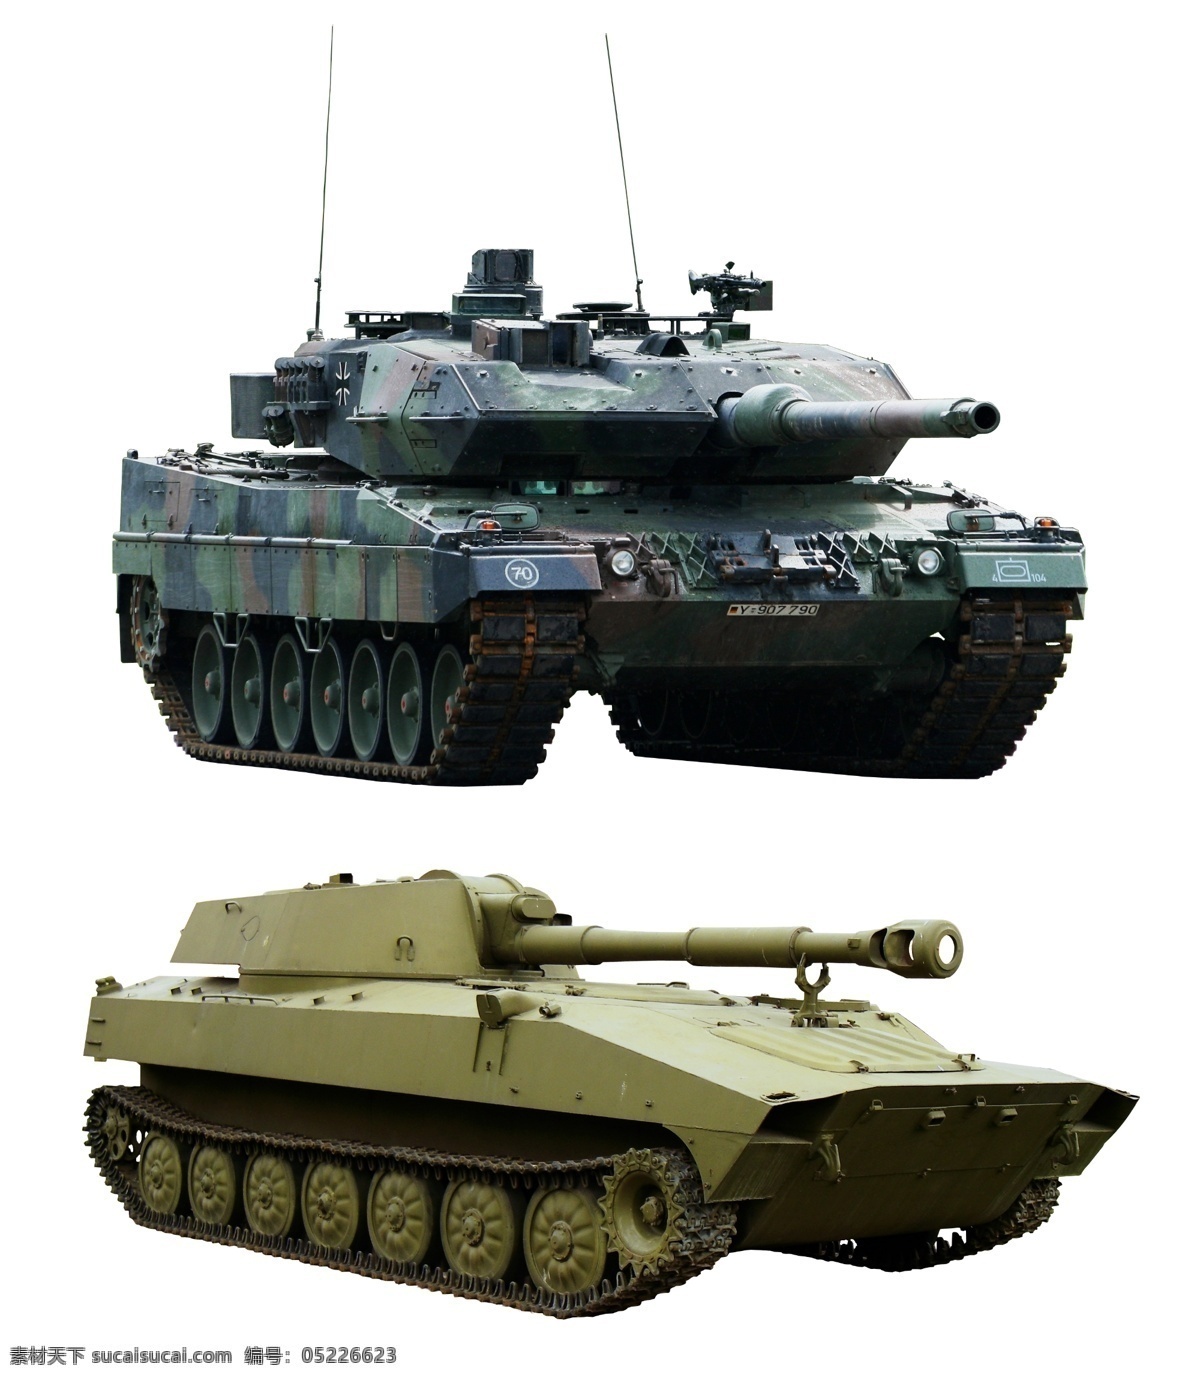 坦克 豹2 主战坦克 德国坦克 陆地坦克 武器 军事武器 tank 现代科技 分层